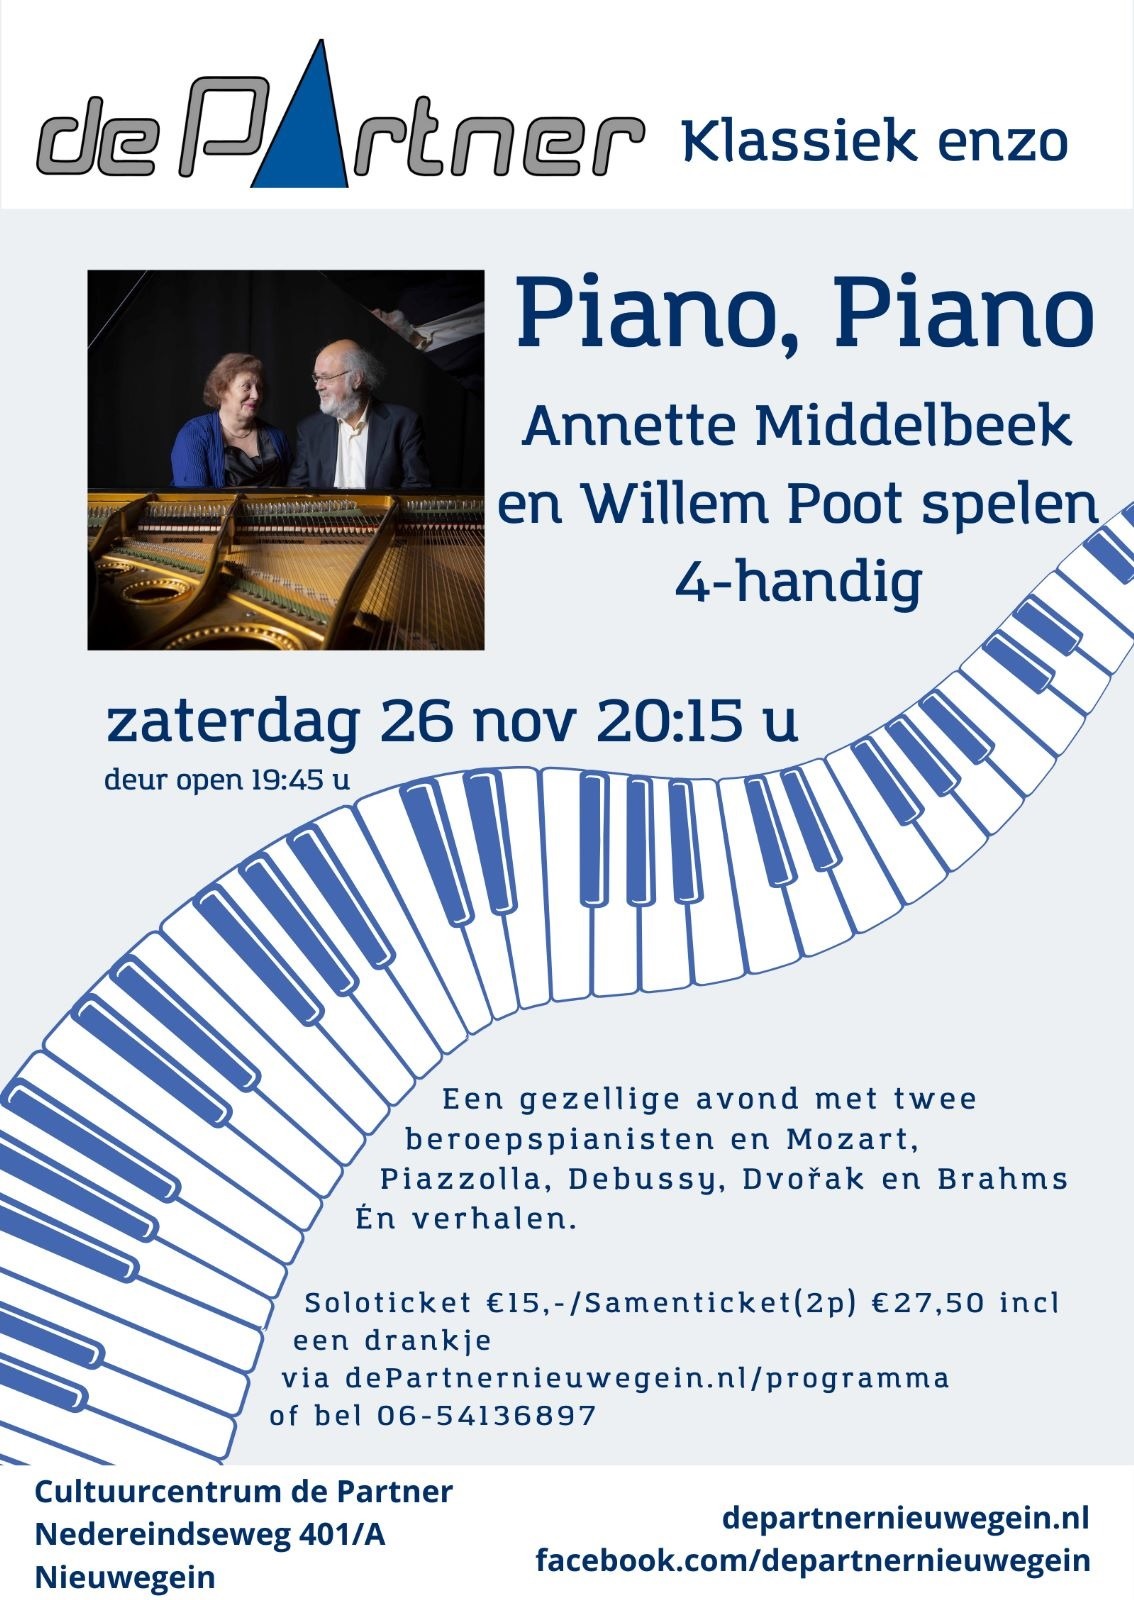 https://www.nieuwegeinsewijken.nl/batau-zuid/upload/afbeeldingen/piano-departner.jpg